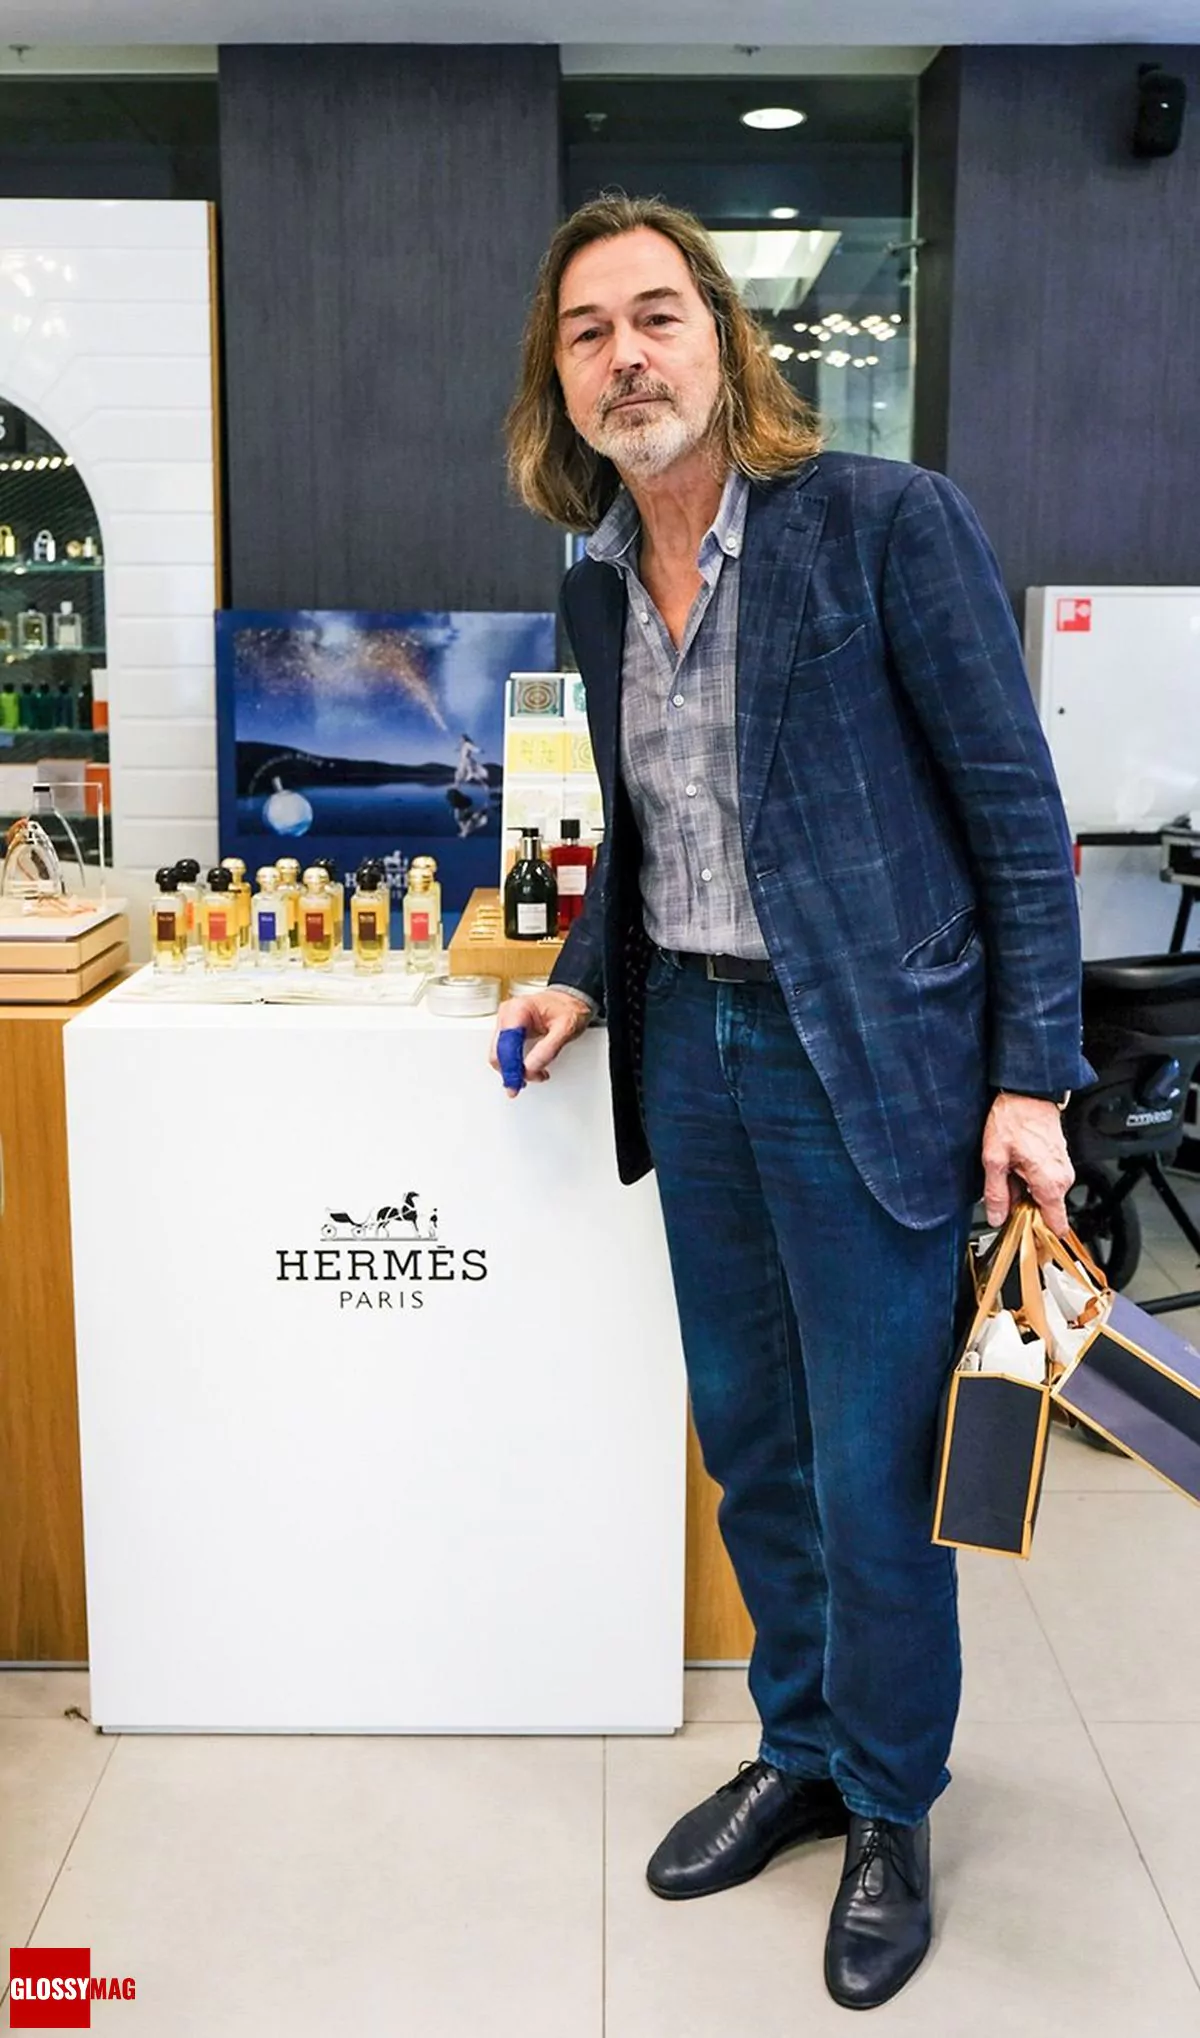 Никас Сафронов в корнере Hermès на закрытом мероприятии Beauty CHOICE в Rivoli Perfumery в ТГ Модный сезон, 28 июня 2017 г.